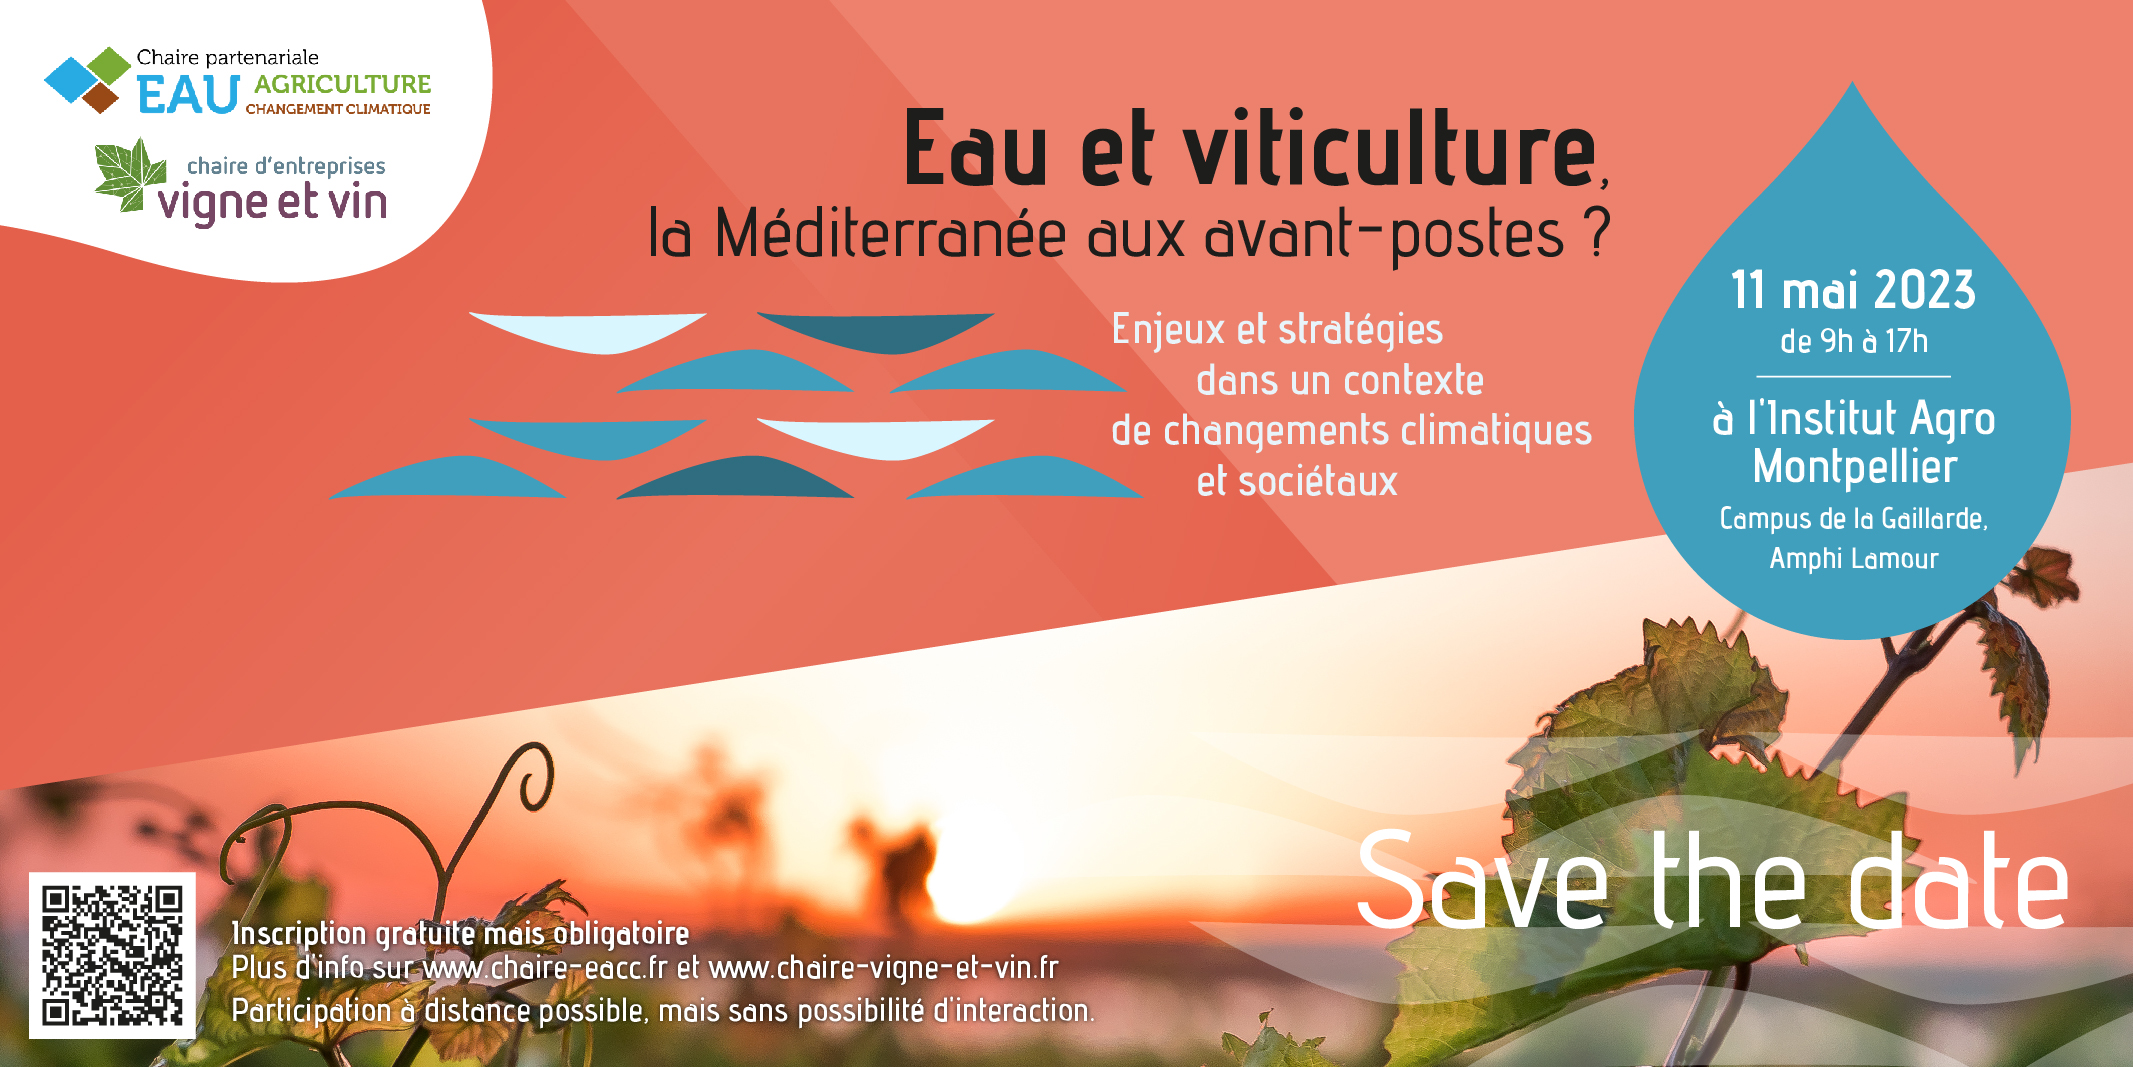 Eau et viticulture : la Méditerranée aux avant-postes ? Séminaire le 11 mai à l’Institut Agro Montpellier